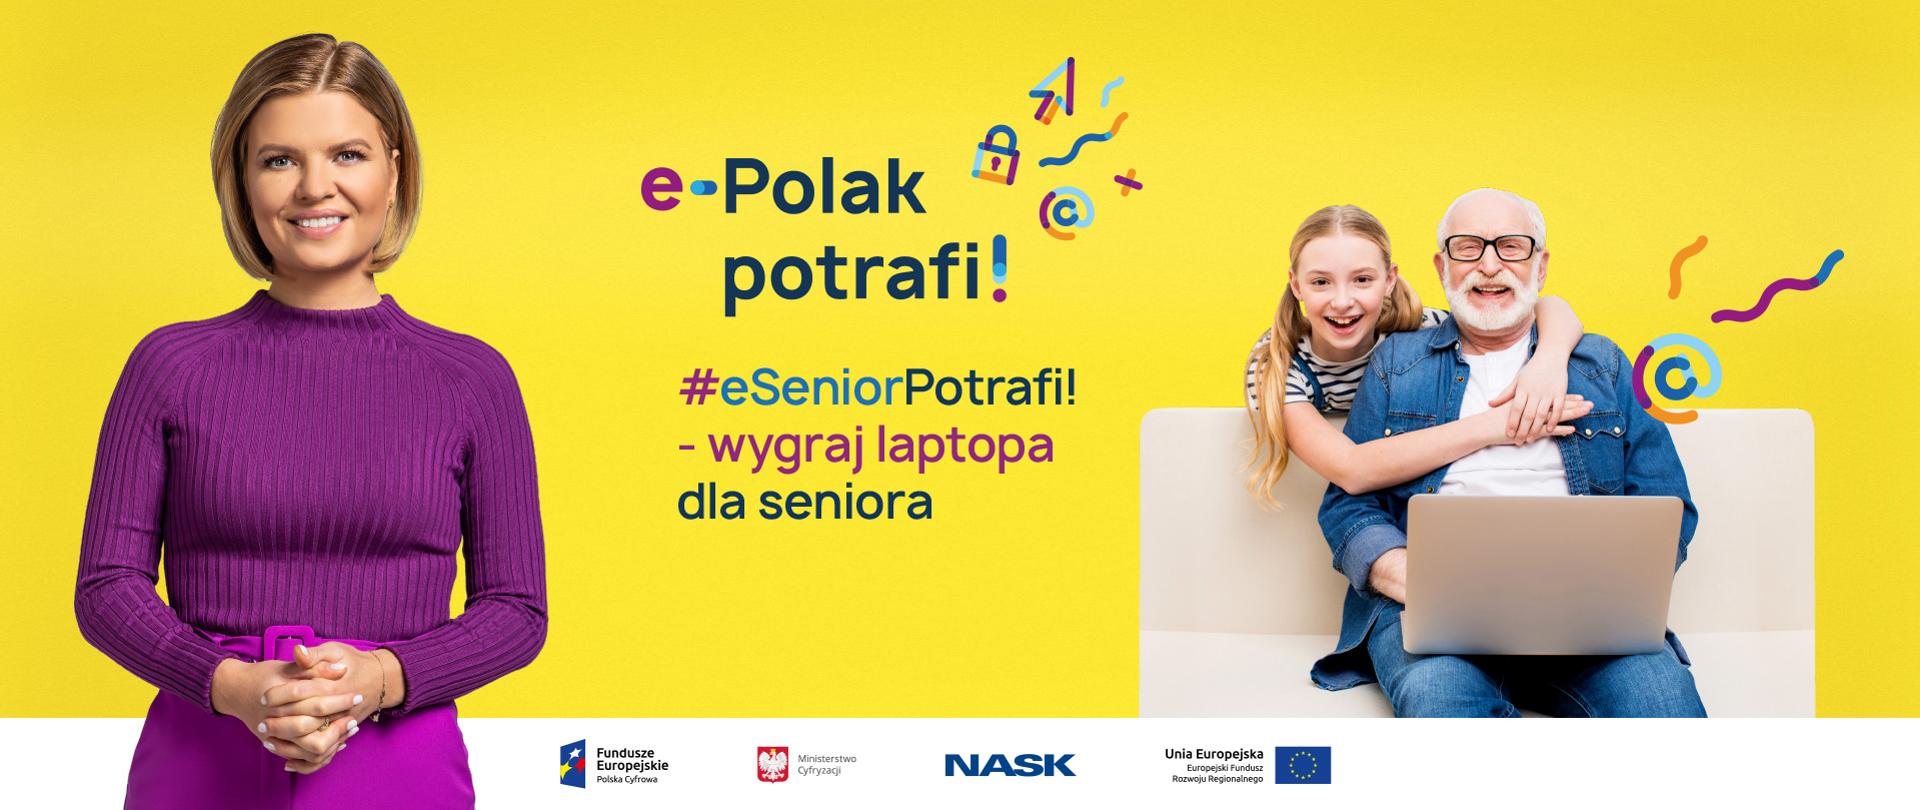 Z lewej strony - ubrana na fioletowo Marta Manowska, z prawej - uśmiechnięty dziadek przed laptopem, obejmuje go wnuczka. Na środku tekst: e-Polak potrafi! #eSeniorPotrafi! - wygraj laptopa dla seniora. Całość na żółtym tle.